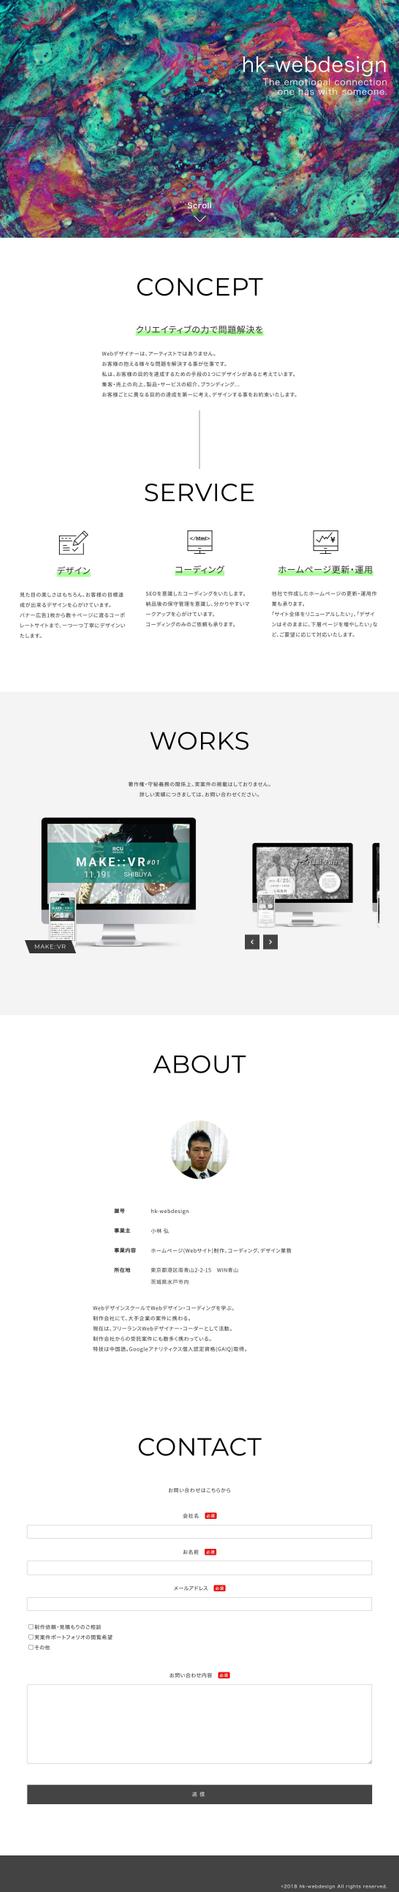 hk-webdesign